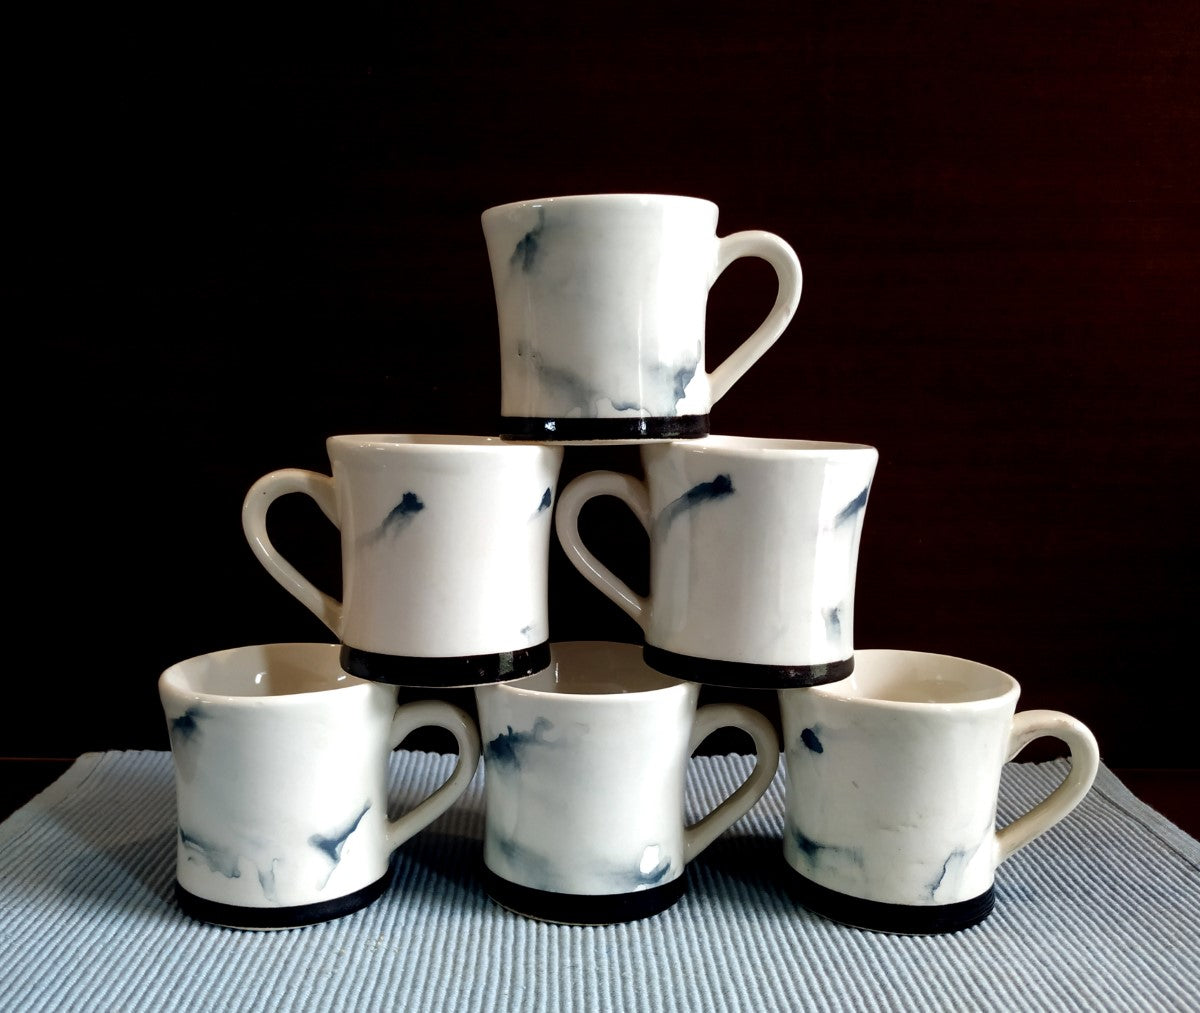 Graceful Ceramic Tea Cups | Set of 6 Cups